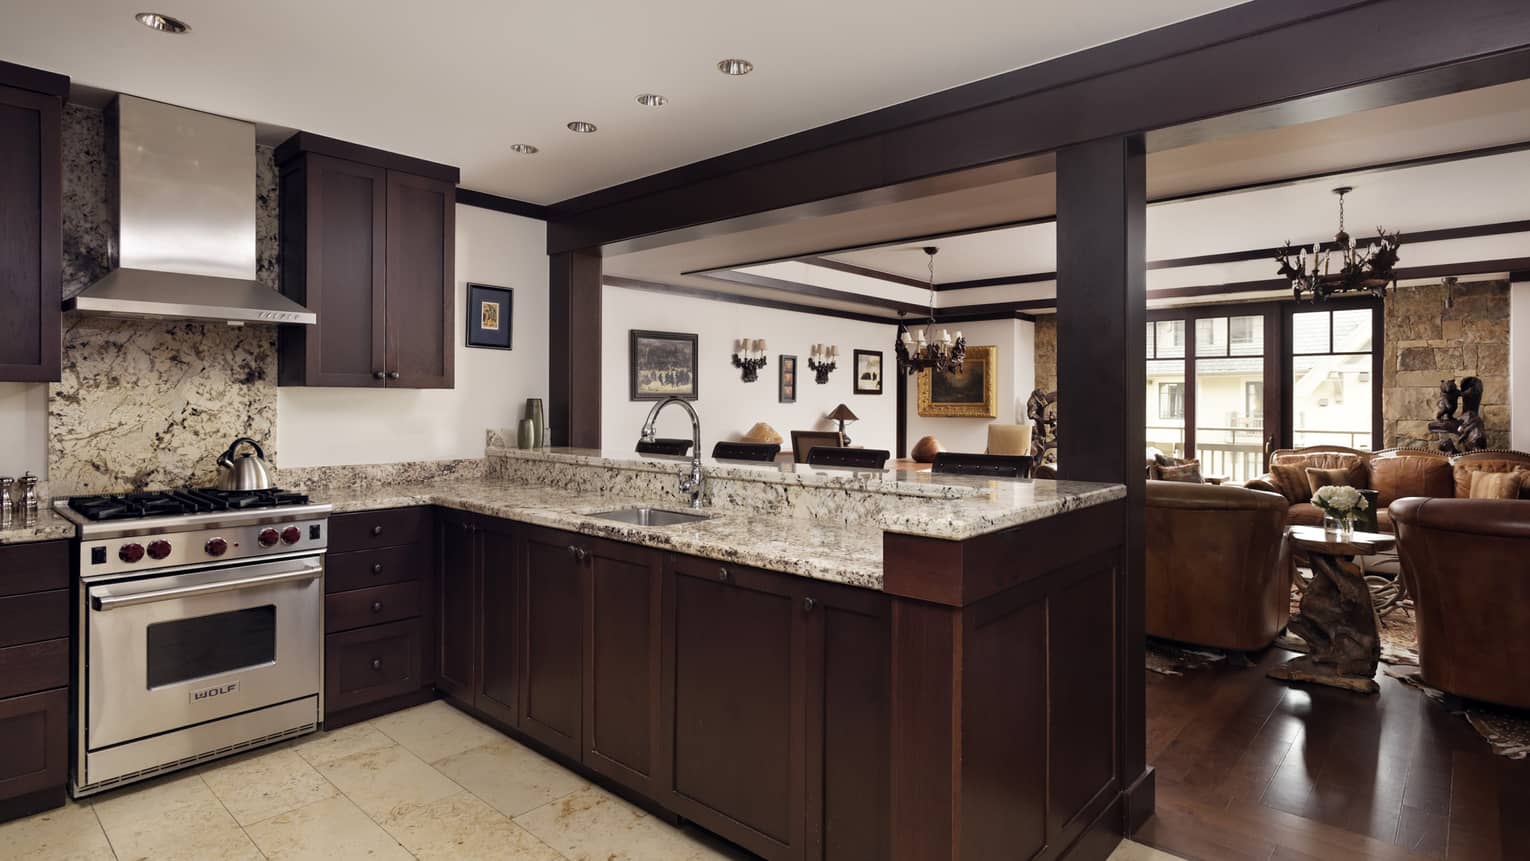 Kitchen with dark wooden cupboards, granite counters, gas range